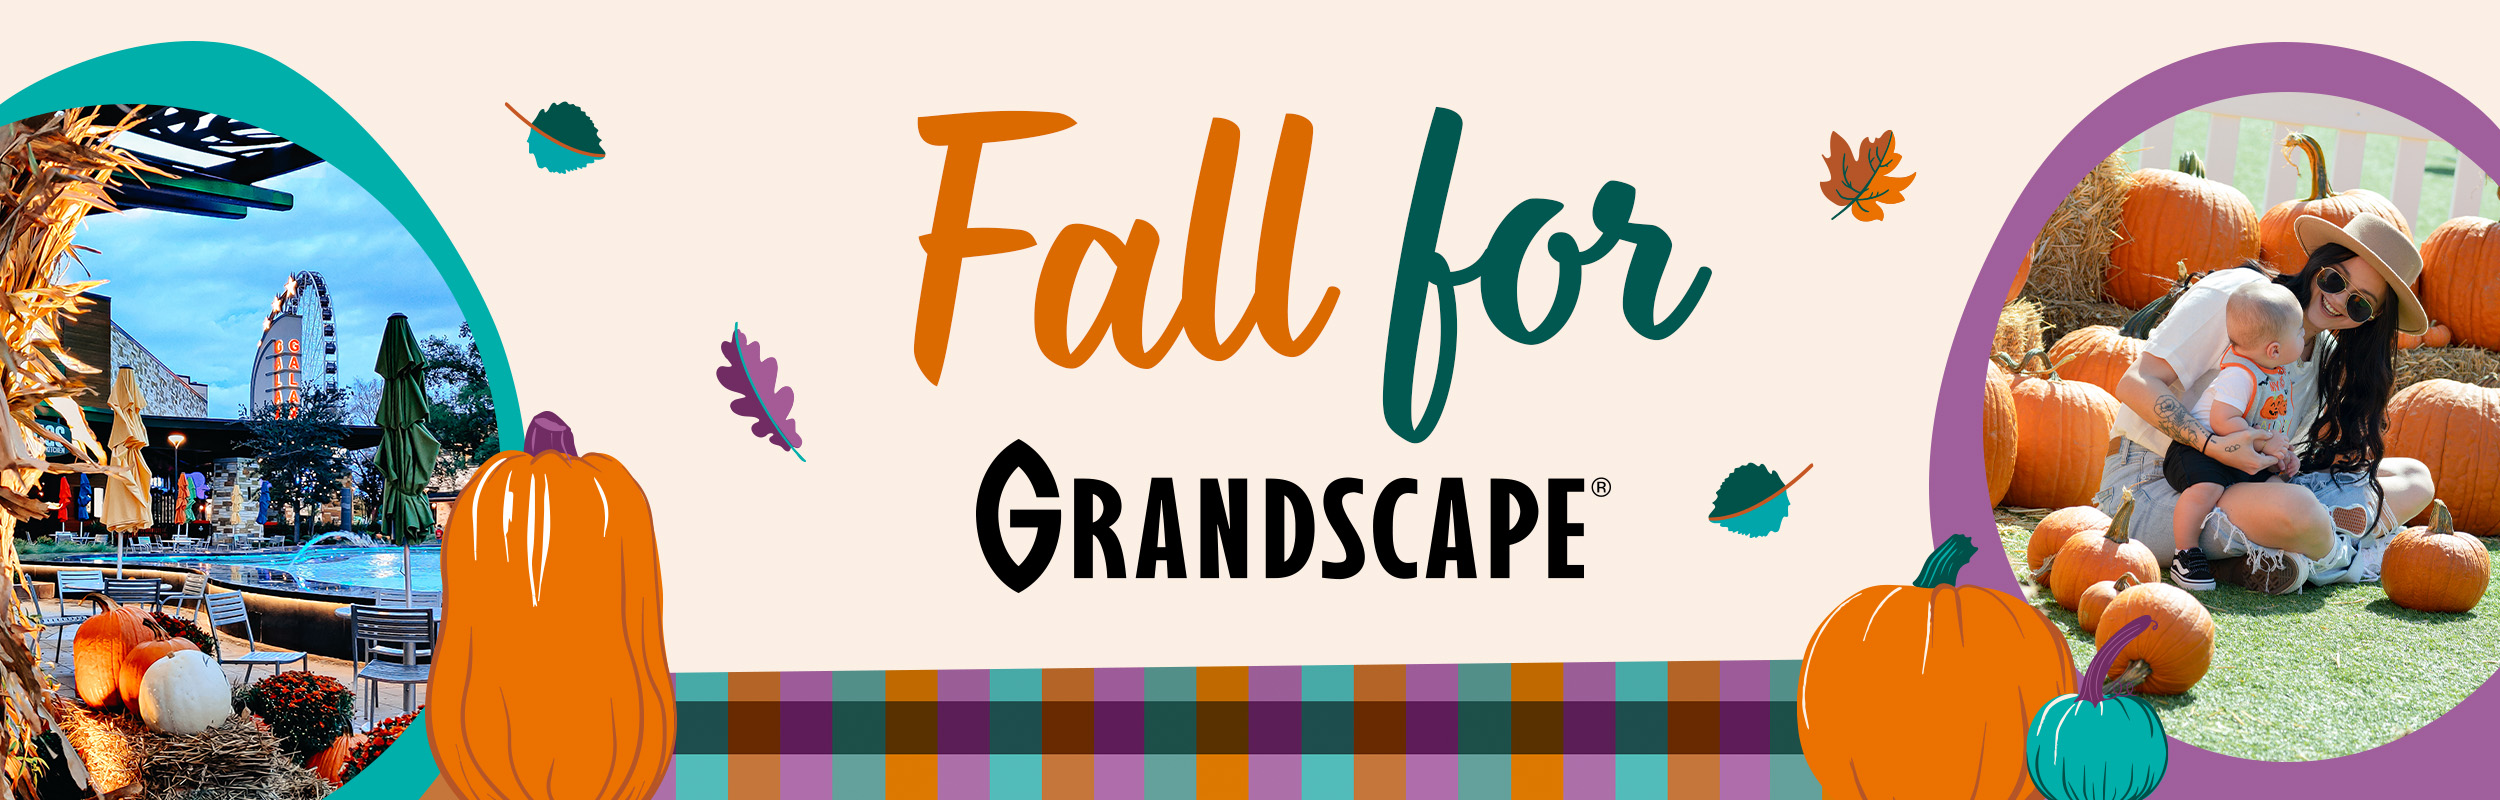 Fall for Grandscape